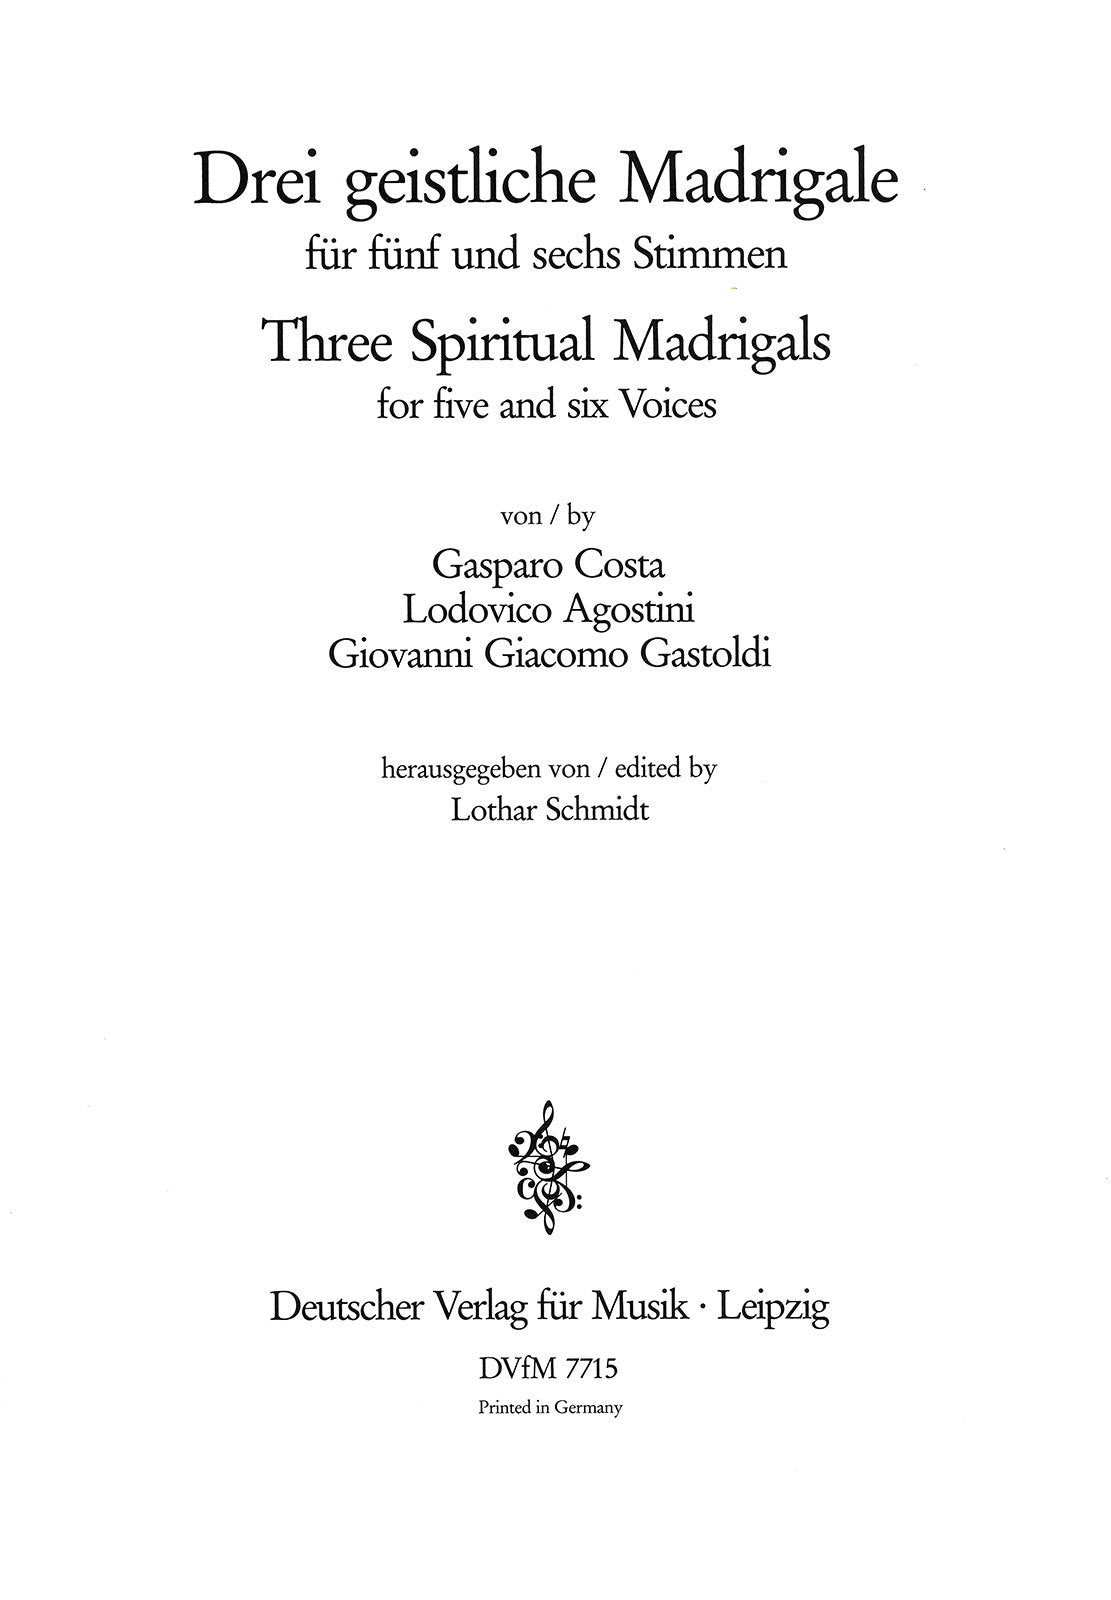 3 Spiritual Madrigals